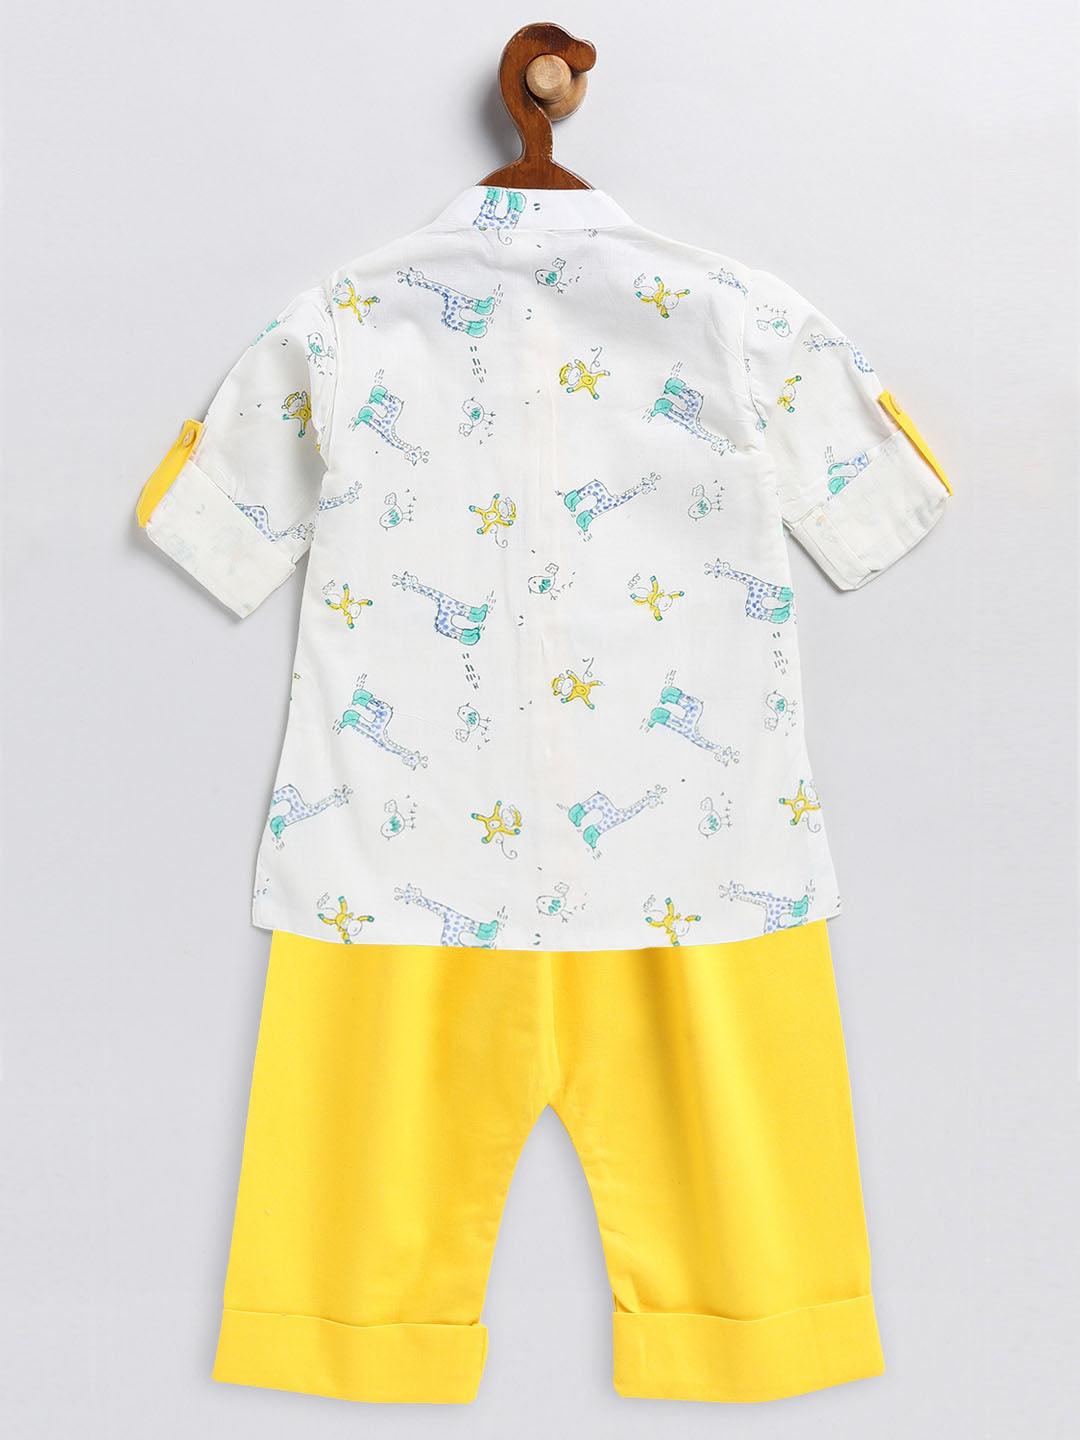 VASTRAMAY SISHU Boy's White and Yellow Animals Printed Cotton Kurta Pyjama Set - Uboric